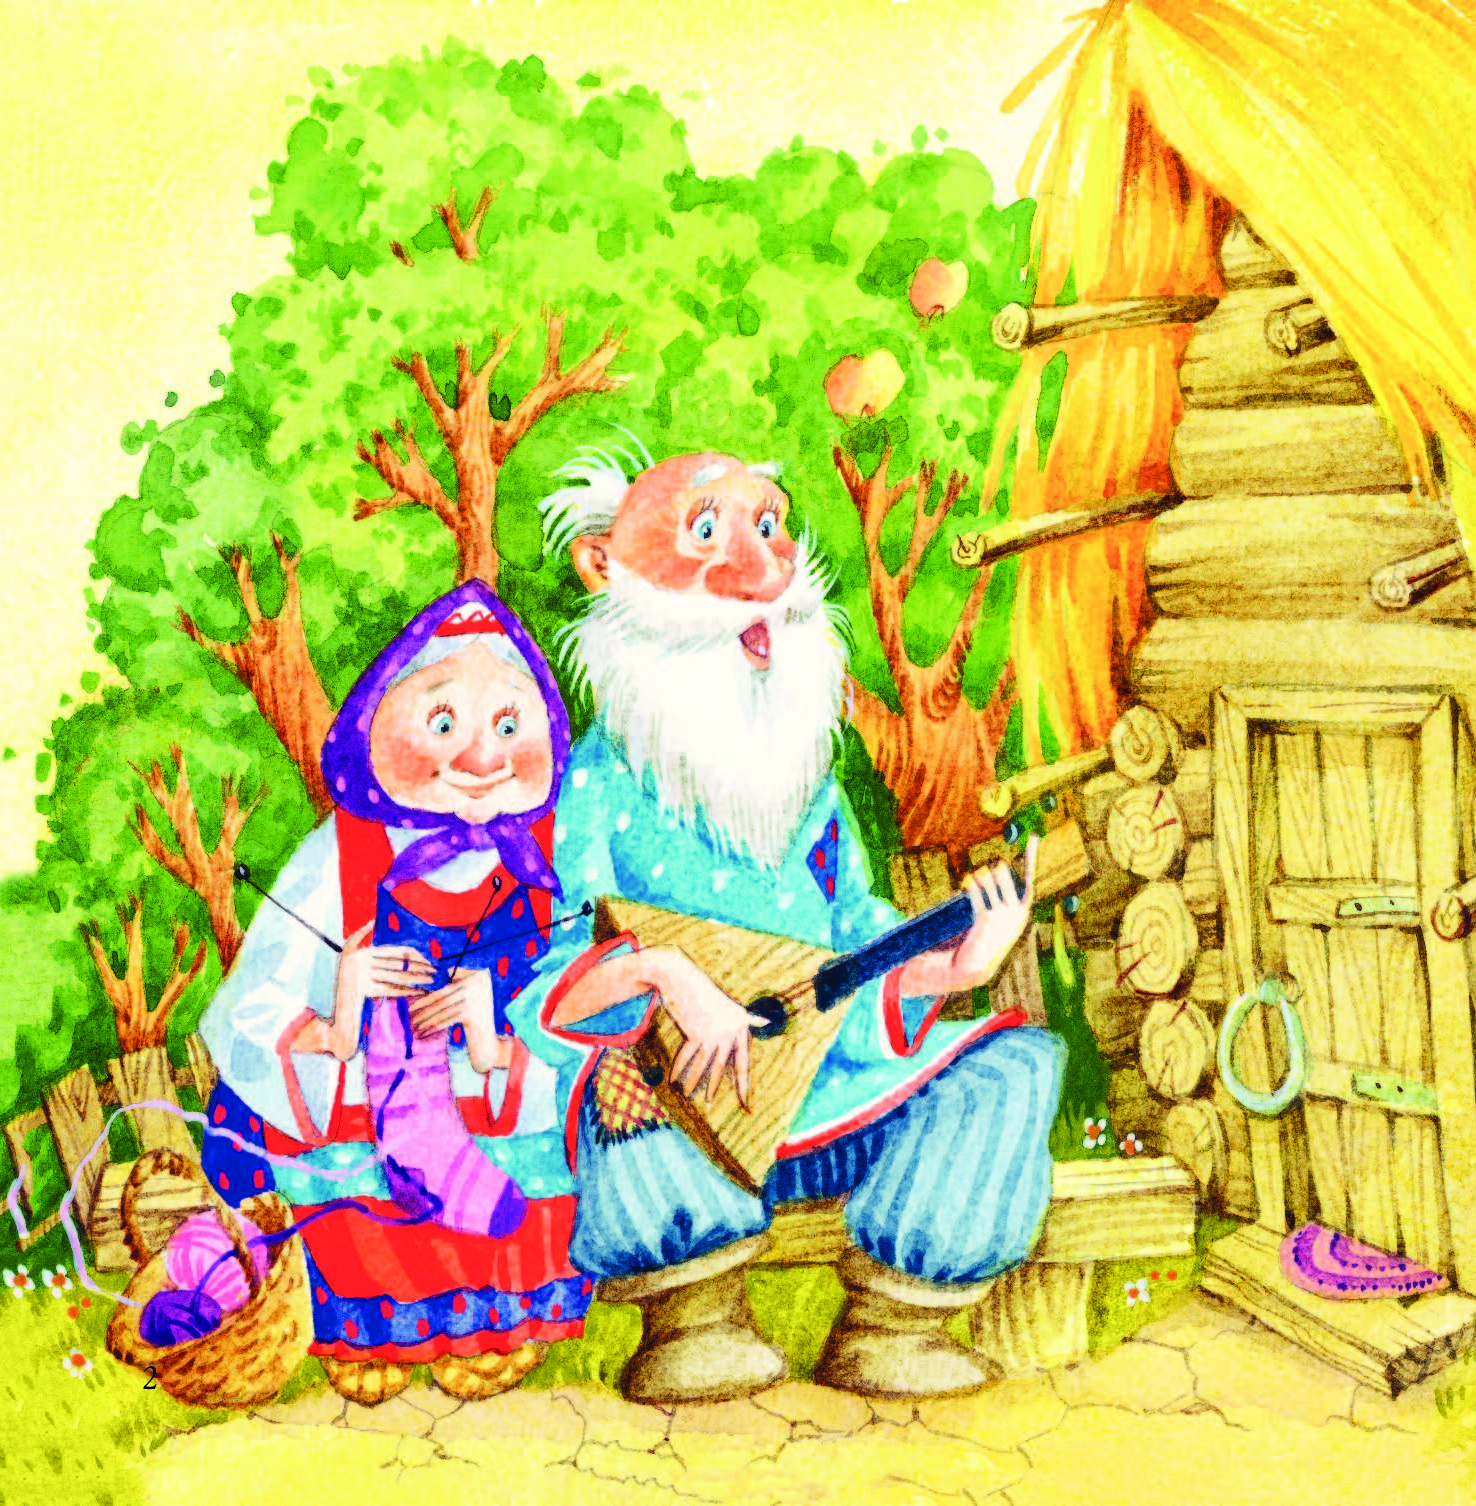 Сказки для детей онлайн смотреть бесплатно: Сказки для детей смотреть онлайн подборку. Список лучшего контента в HD качестве